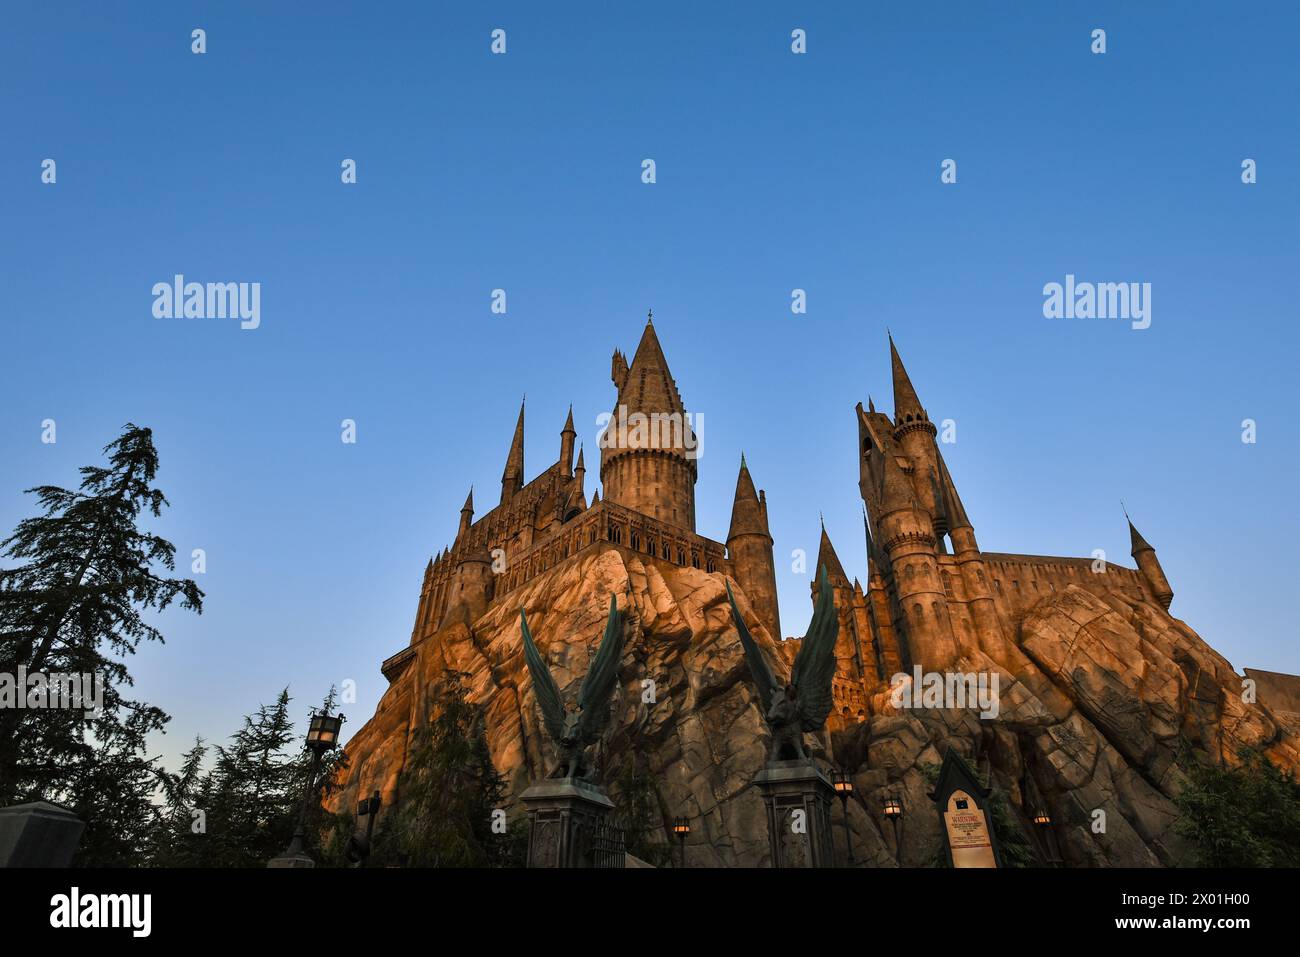 Sonnenuntergang über Hogwarts Castle in der Zauberwelt von Harry Potter in den Universal Studios Hollywood - Los Angeles, Kalifornien Stockfoto